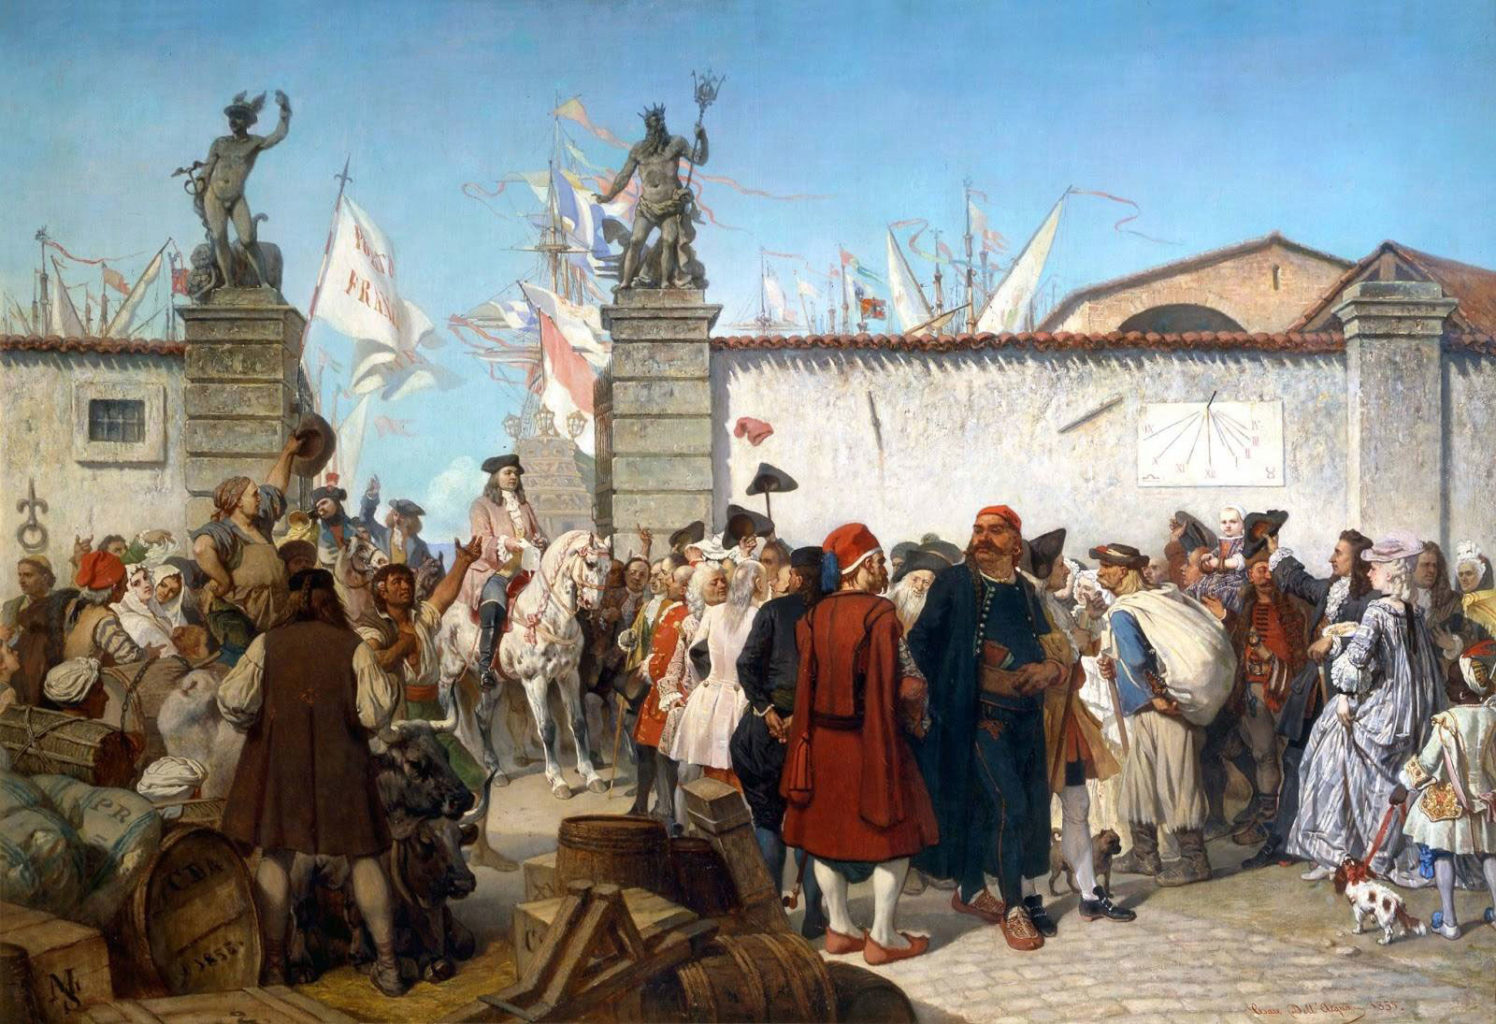 La proclamazione del porto franco di Trieste, 1885 Autore: Cesare dell'Acqua (Pirano, 22 luglio 1821 – Bruxelles, 16 febbraio 1905) - Trieste, Museo Civico Revoltella.